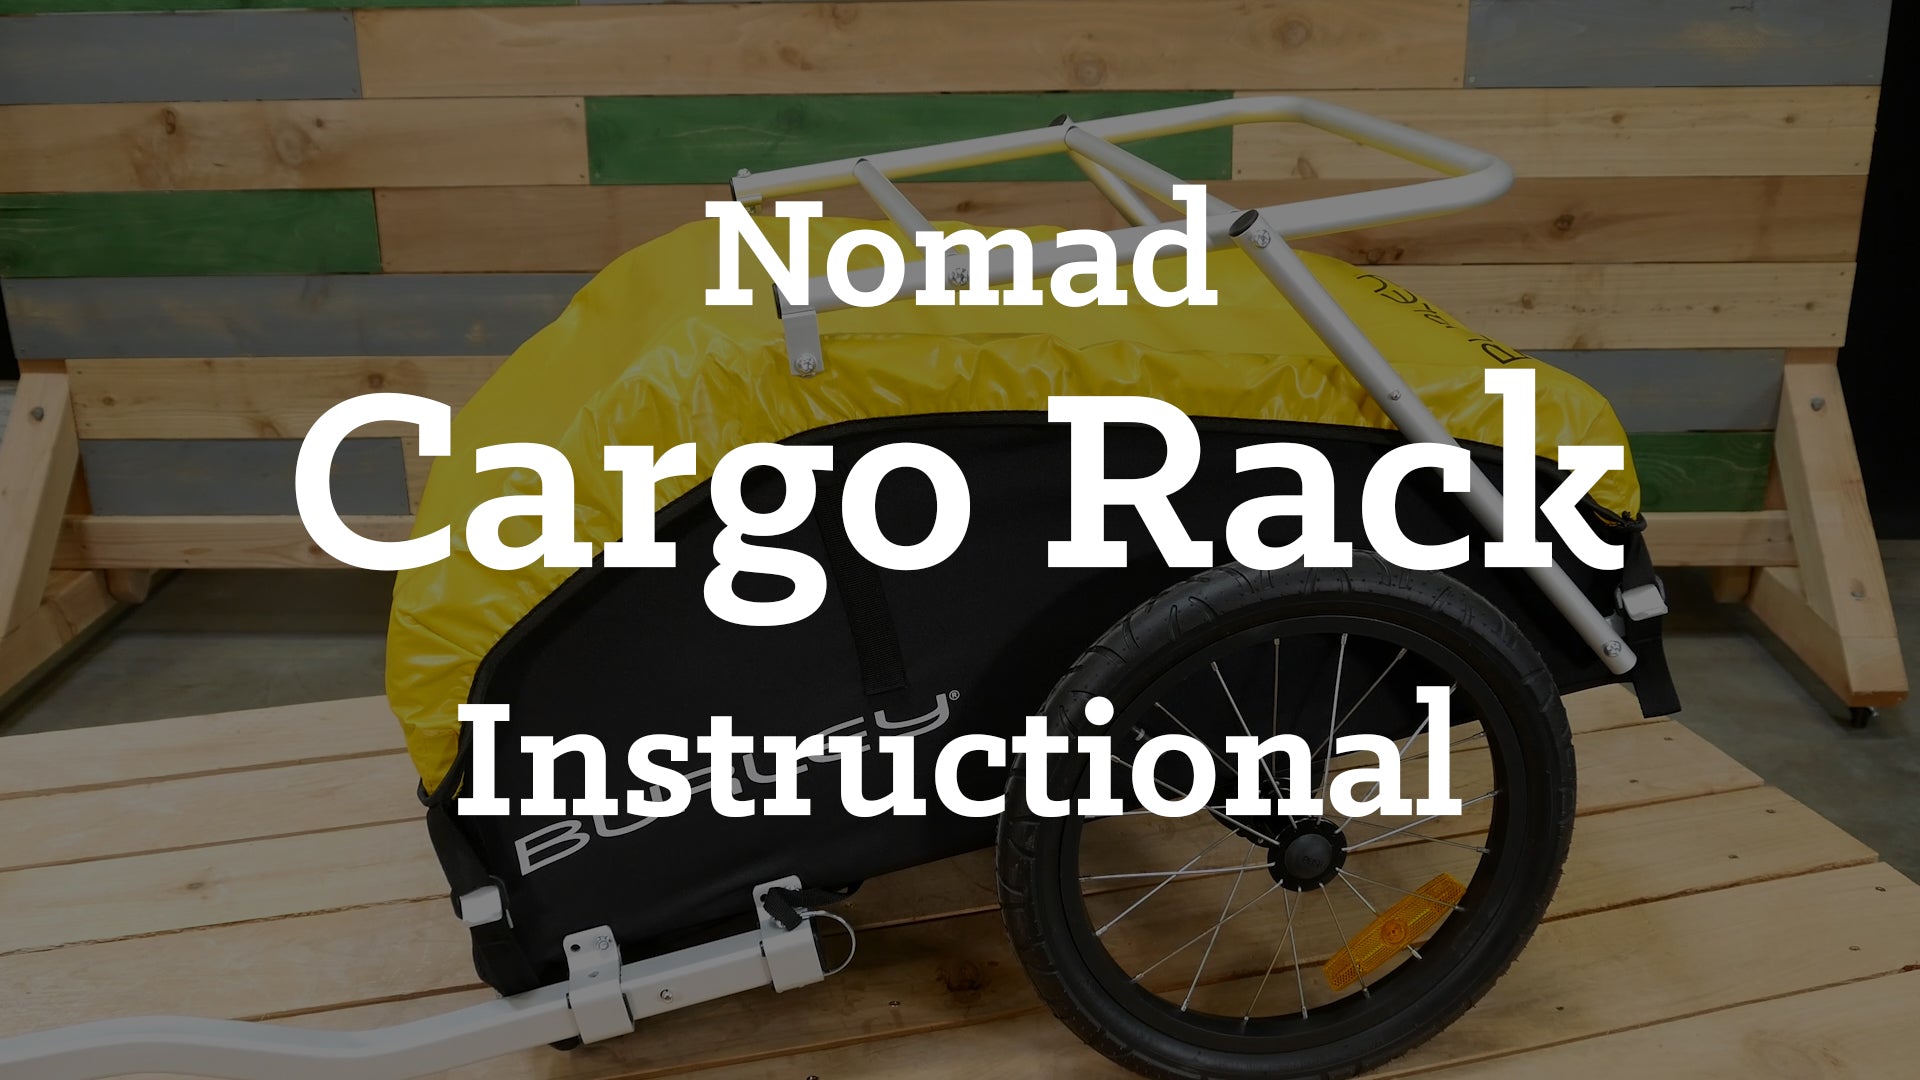 Nomad Cargo Rack Instructions